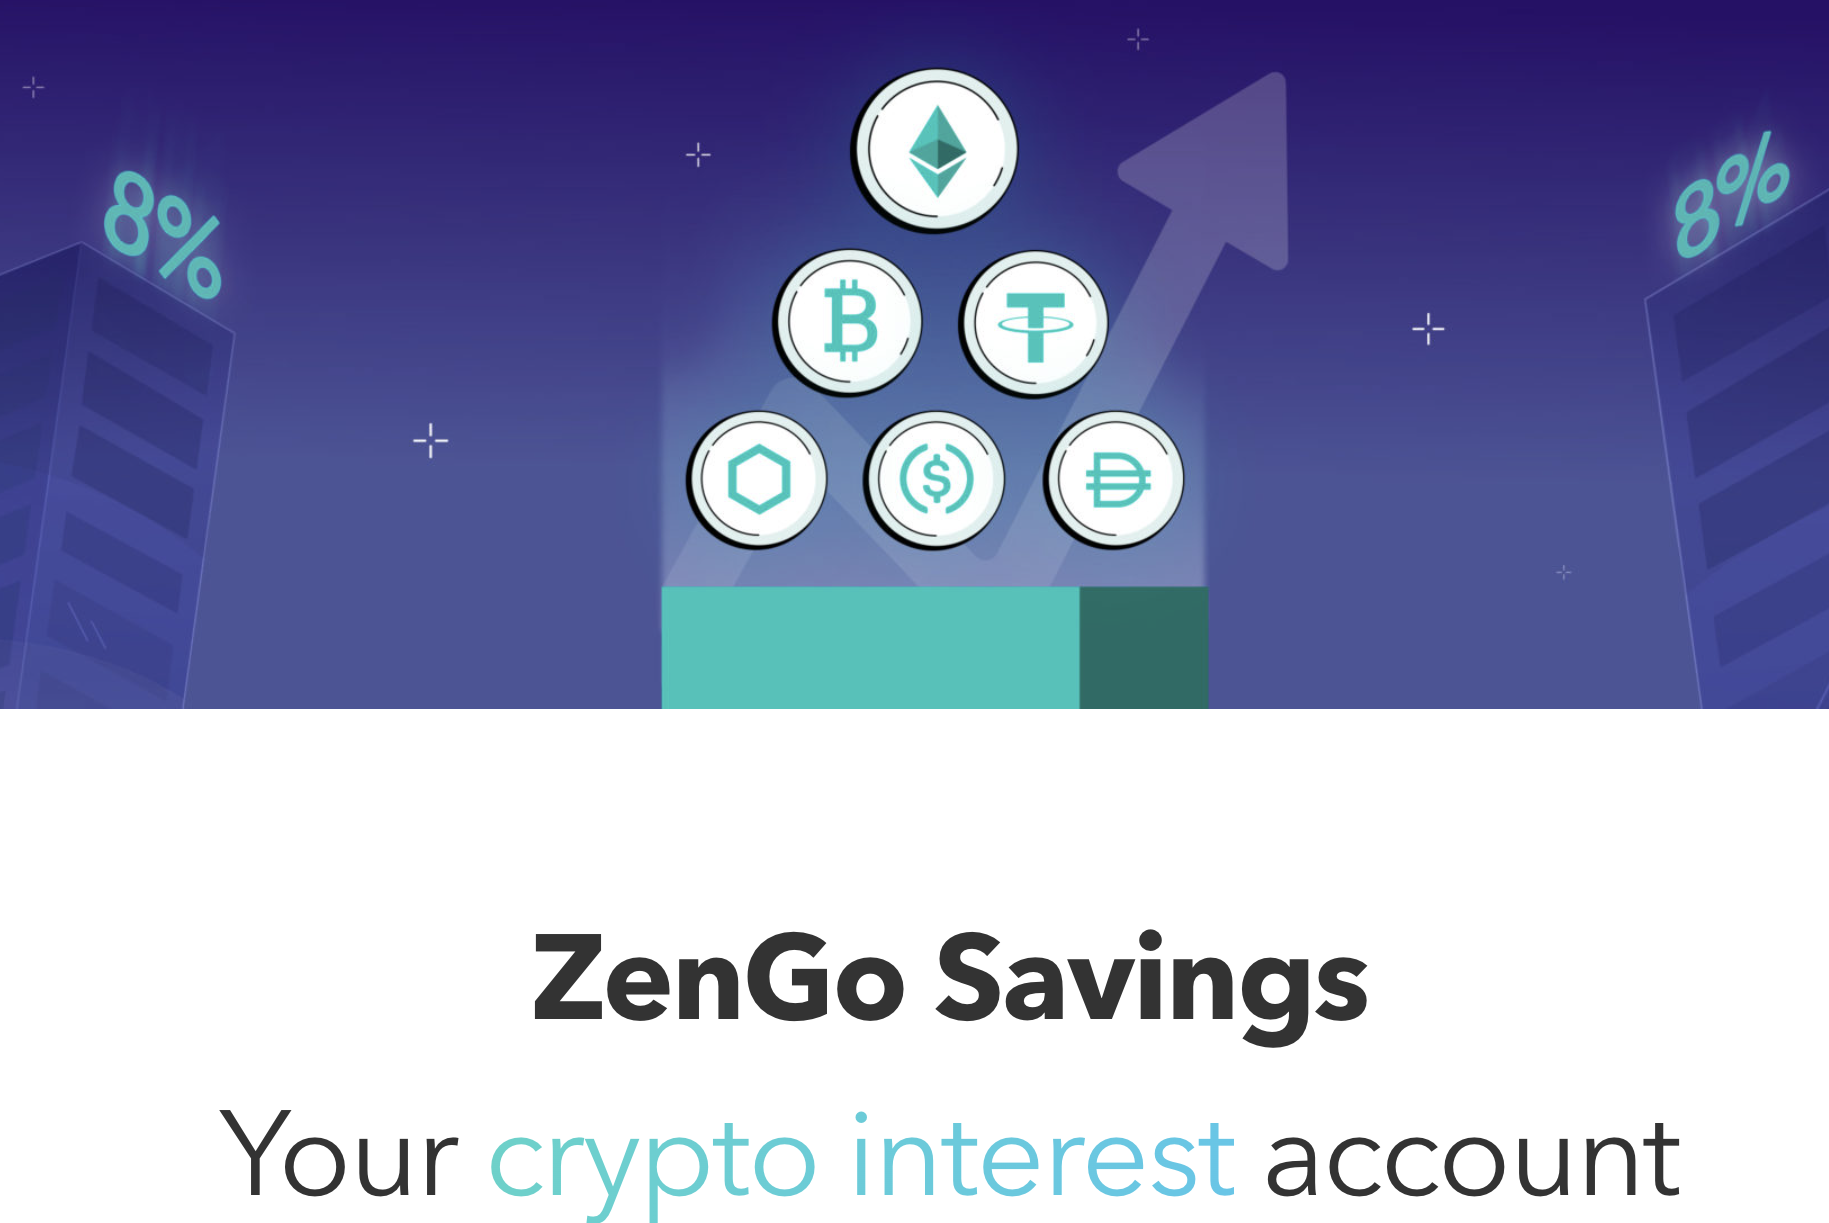 ZenGo Savings